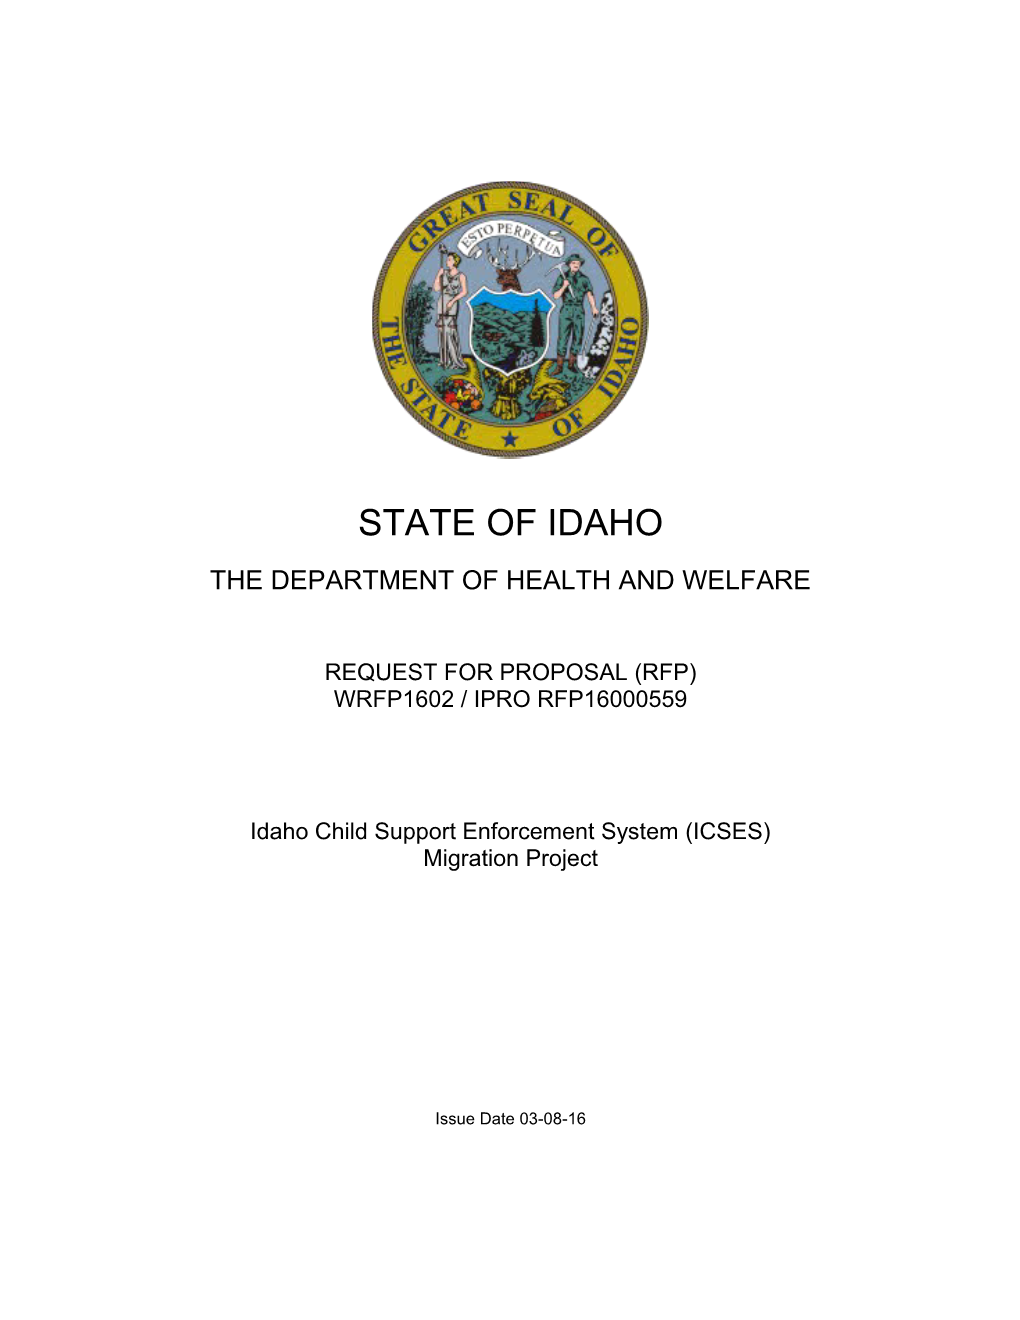 State of Idaho s1